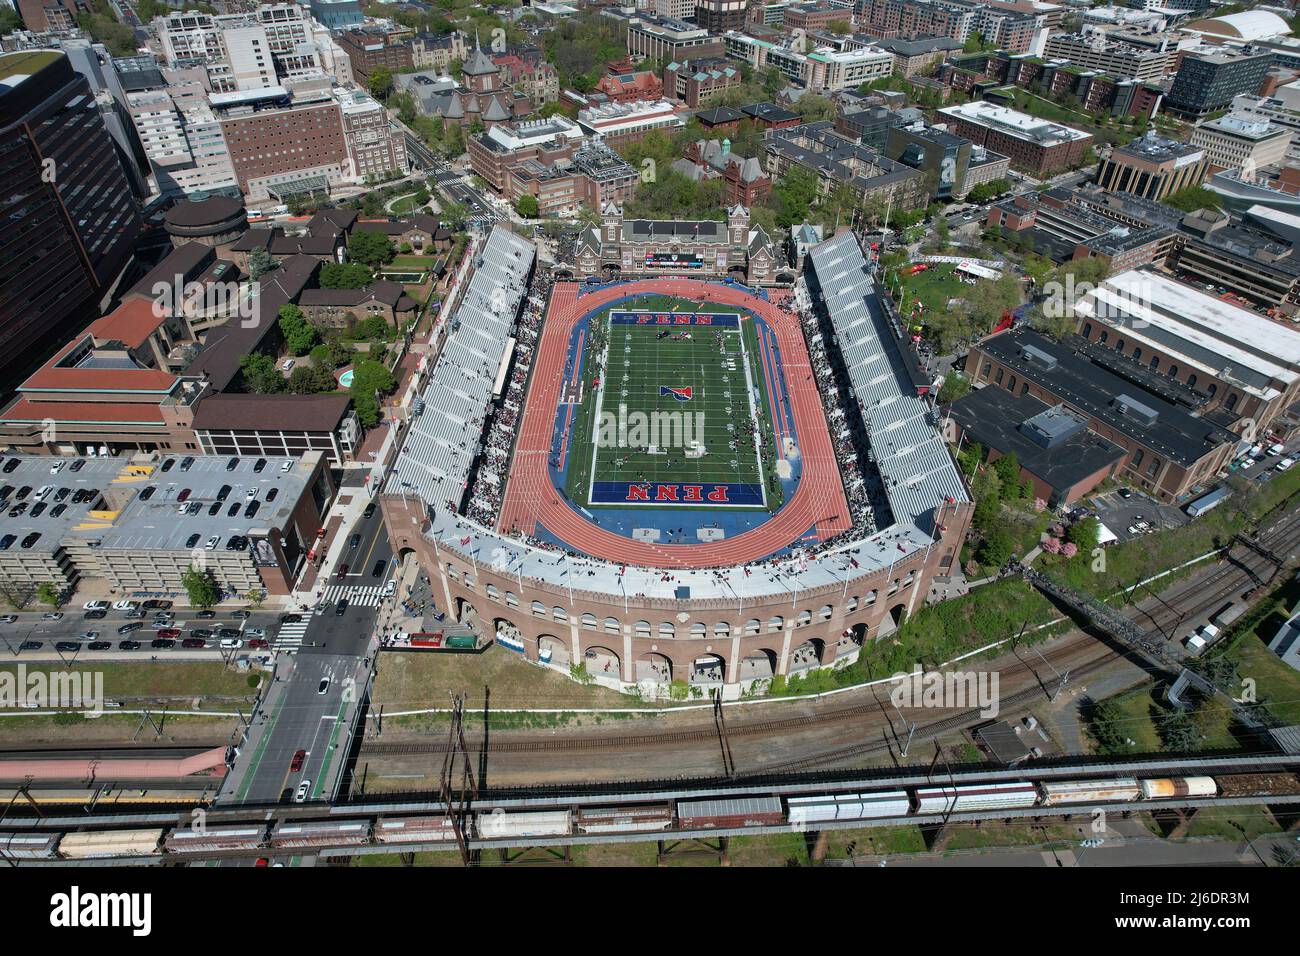 Une vue aérienne de Franklin Field sur le campus de l'Université de Pennsylvanie pendant les 126th Penn Relays, vendredi 29 avril 2022, à Philadelphie Banque D'Images